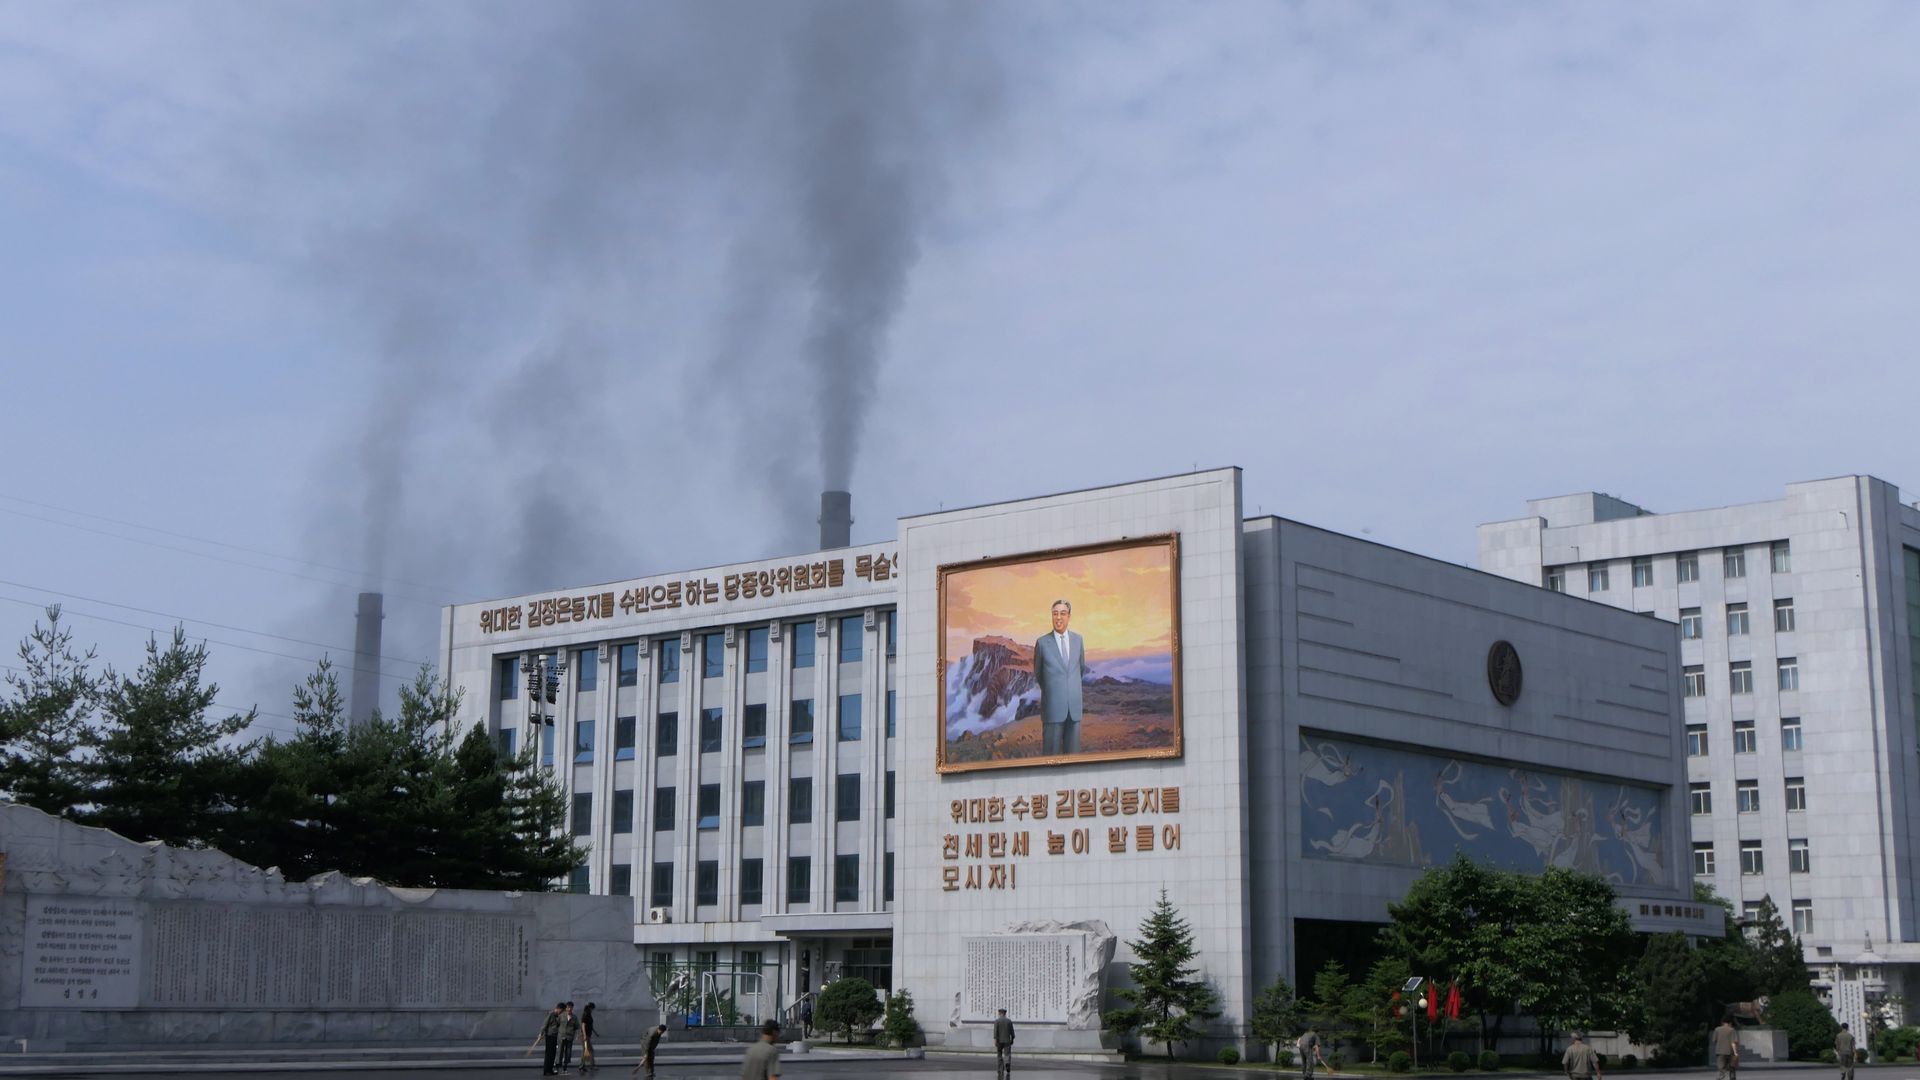 Coal Power Station, June 12, 2018, Pyongyang, North Korea. 